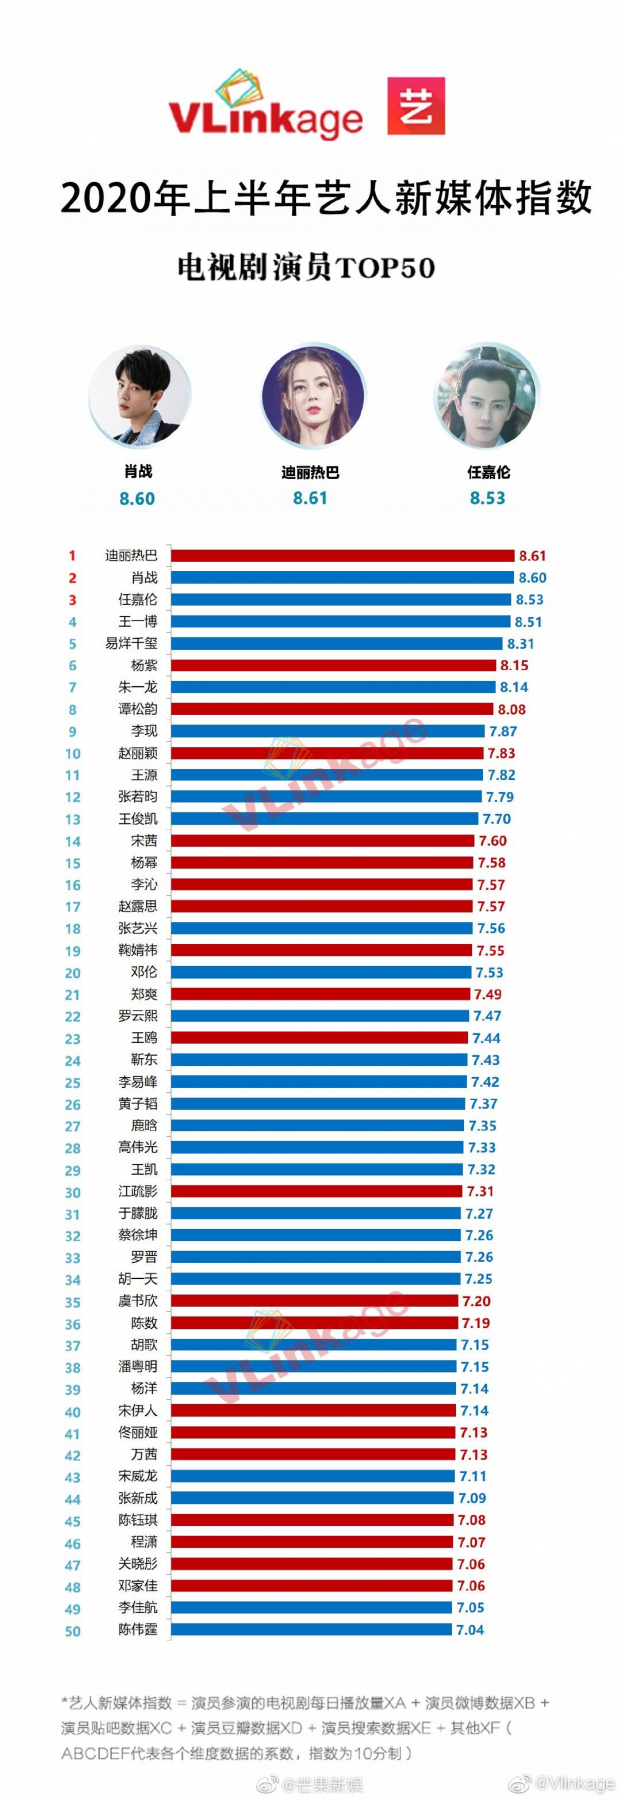 Chỉ số truyền thông sao Hoa ngữ nửa đầu 2020: Tiêu Chiến vẫn top 2, Triệu Lệ Dĩnh hạng 10 4